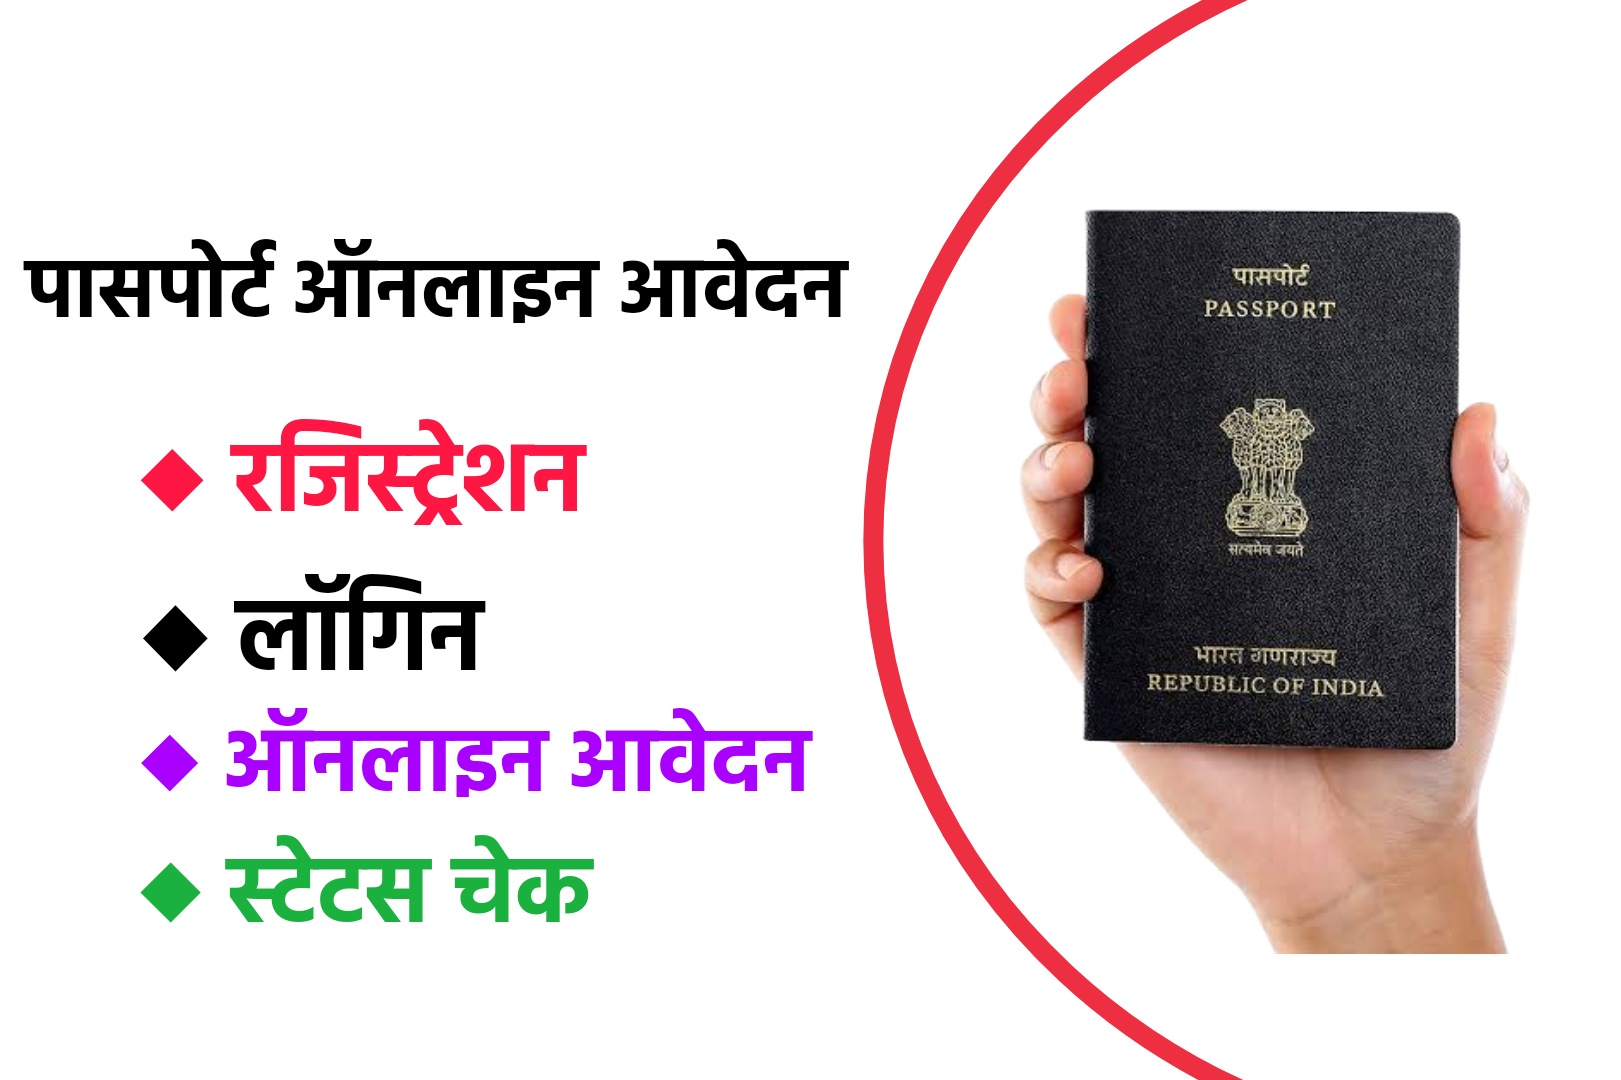 Passport Sewa - ऑनलाइन ऐसे करें पासपोर्ट के लिए आवेदन